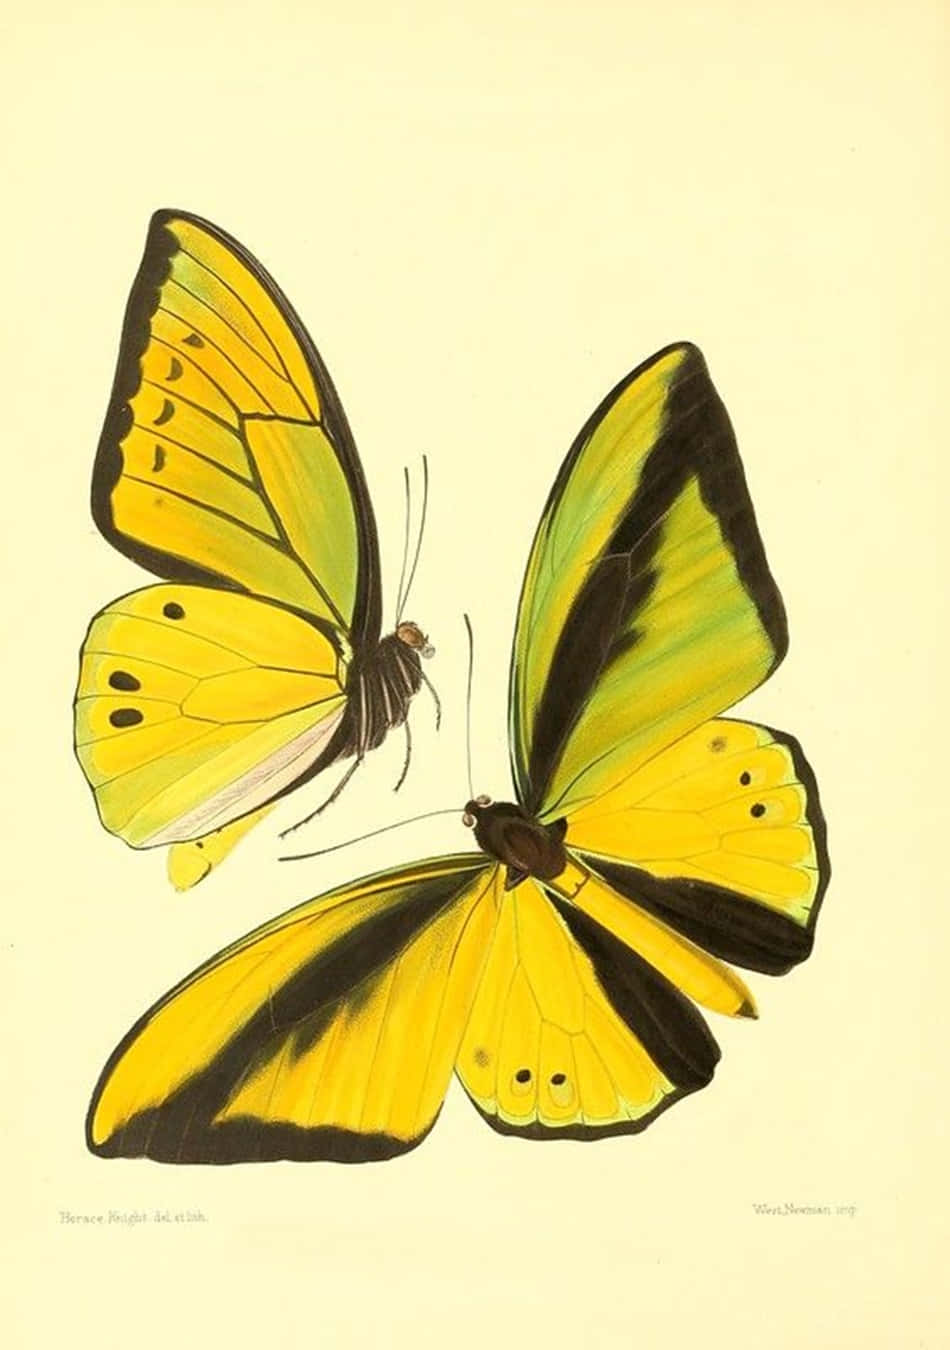 A flock of cute yellow butterflies enjoying the summer sunshine Wallpaper